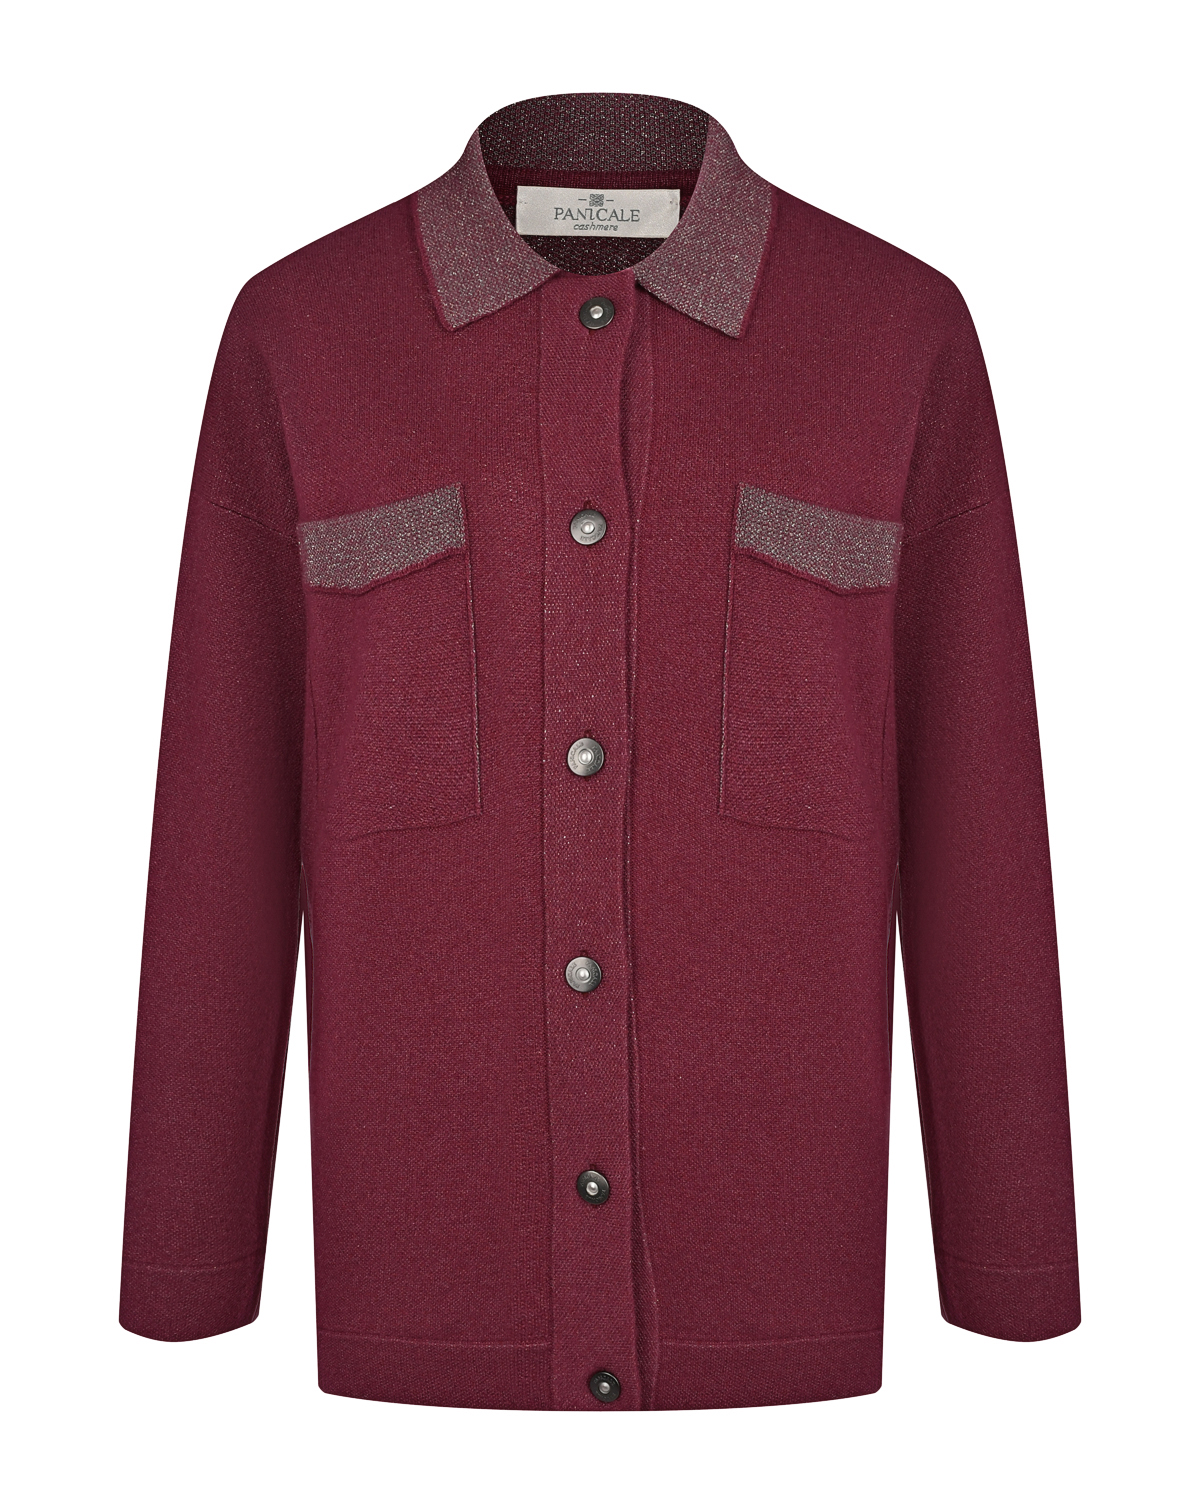 Бордовая рубашка из шерсти и шелка Panicale, размер 44, цвет бордовый - фото 1